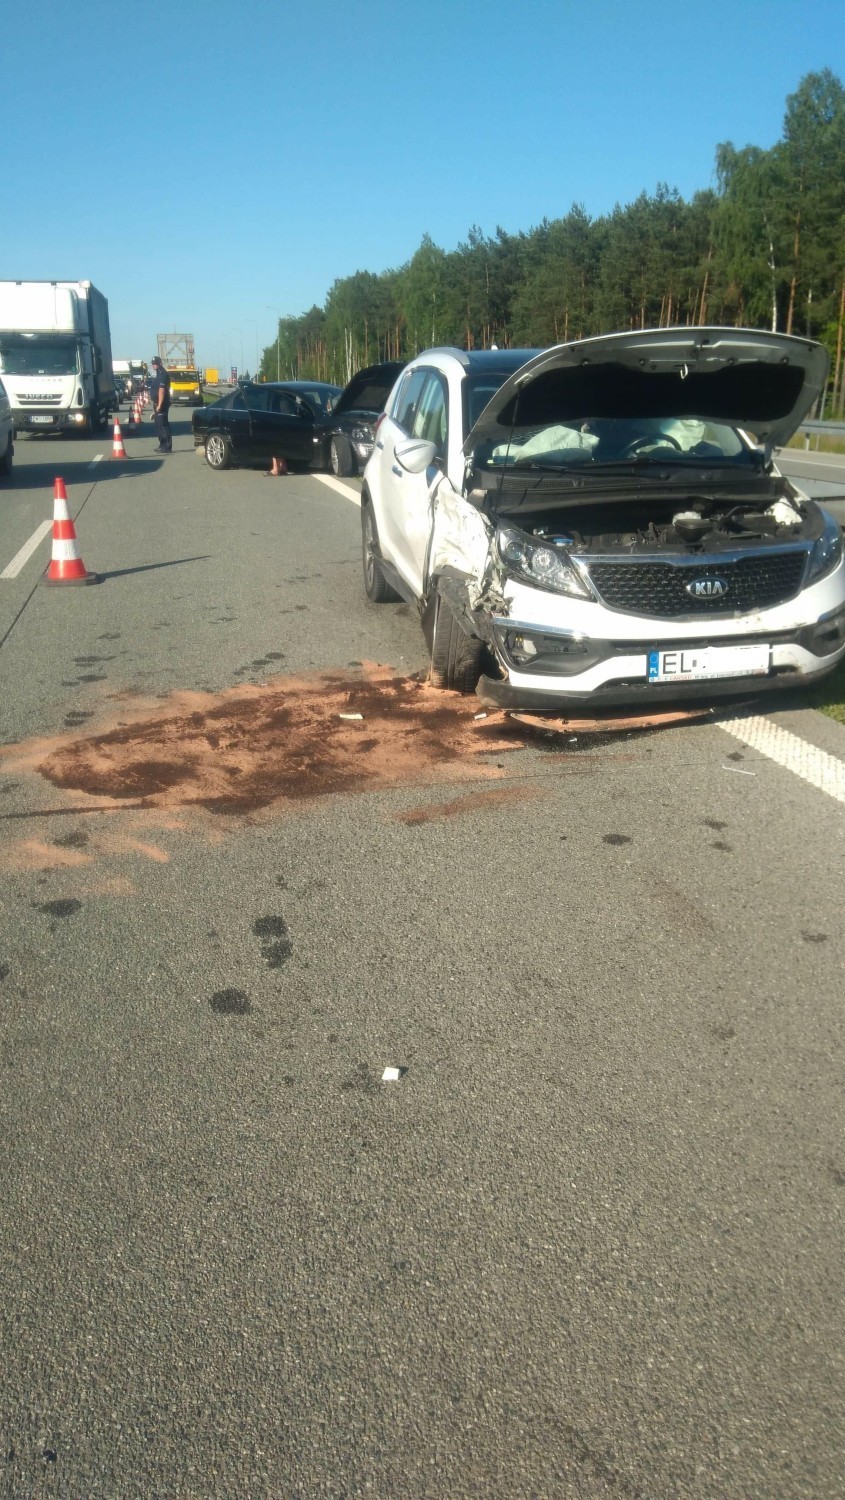 Wypadek  na S8 koło Tomaszowa Mazowieckiego. Zderzenie dwóch samochodów. Jedna osoba ranna [ZDJĘCIA]